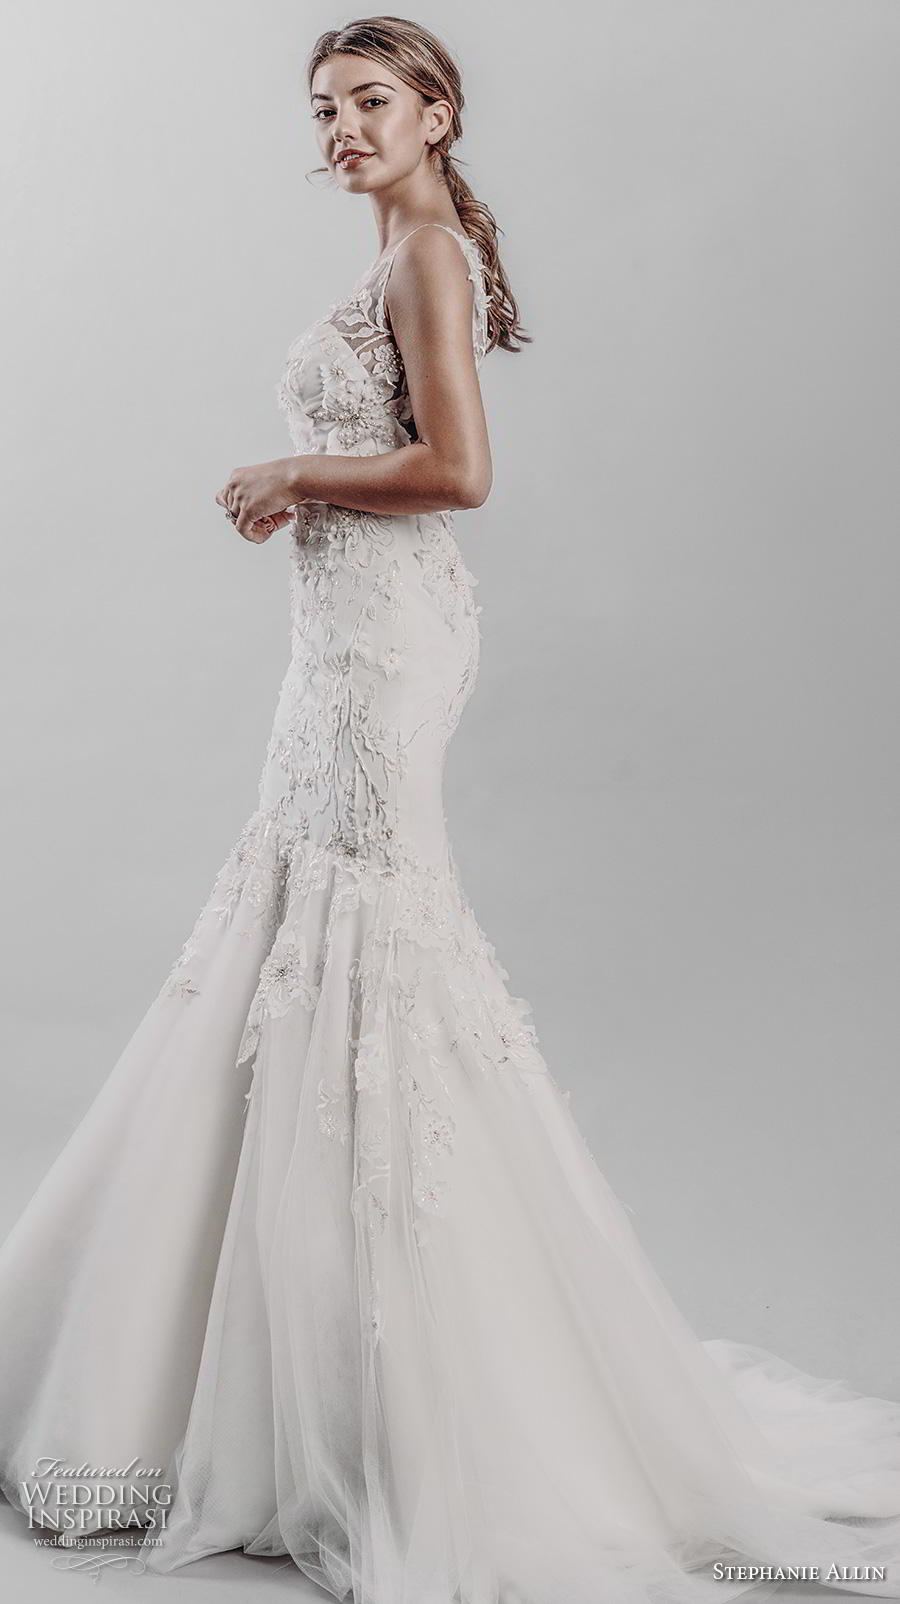 stephanie allin 2019 bridal sleeveless v neck heavily embellished bodice elegant mermaid wedding dress v back medium train (15) sdv